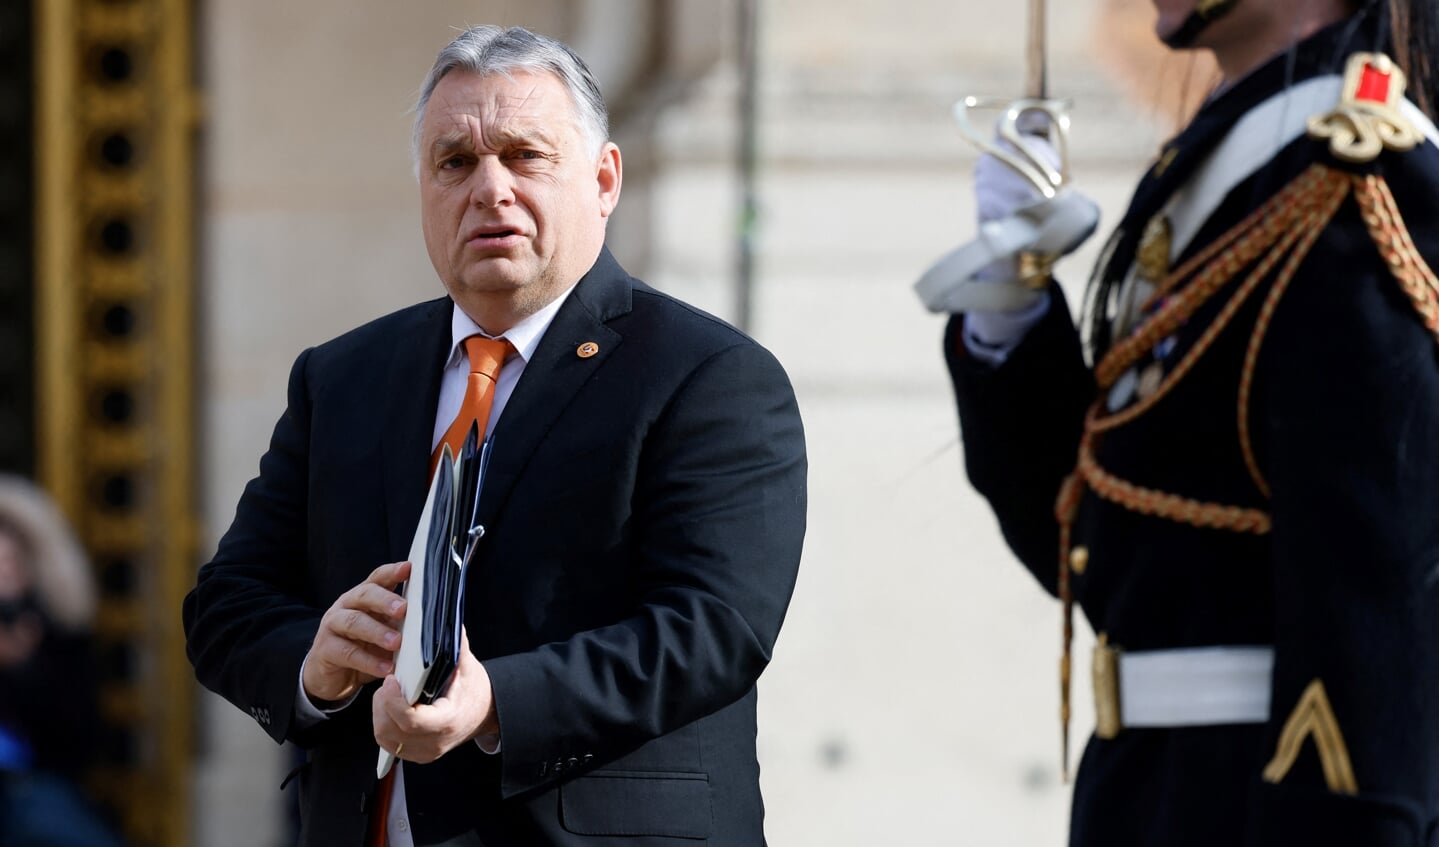 De Hongaarse premier Viktor Orbán arriveert in Versailles bij Parijs op 11 maart 2022, voor een overleg van EU-leiders over de oorlog in Oekraïne.